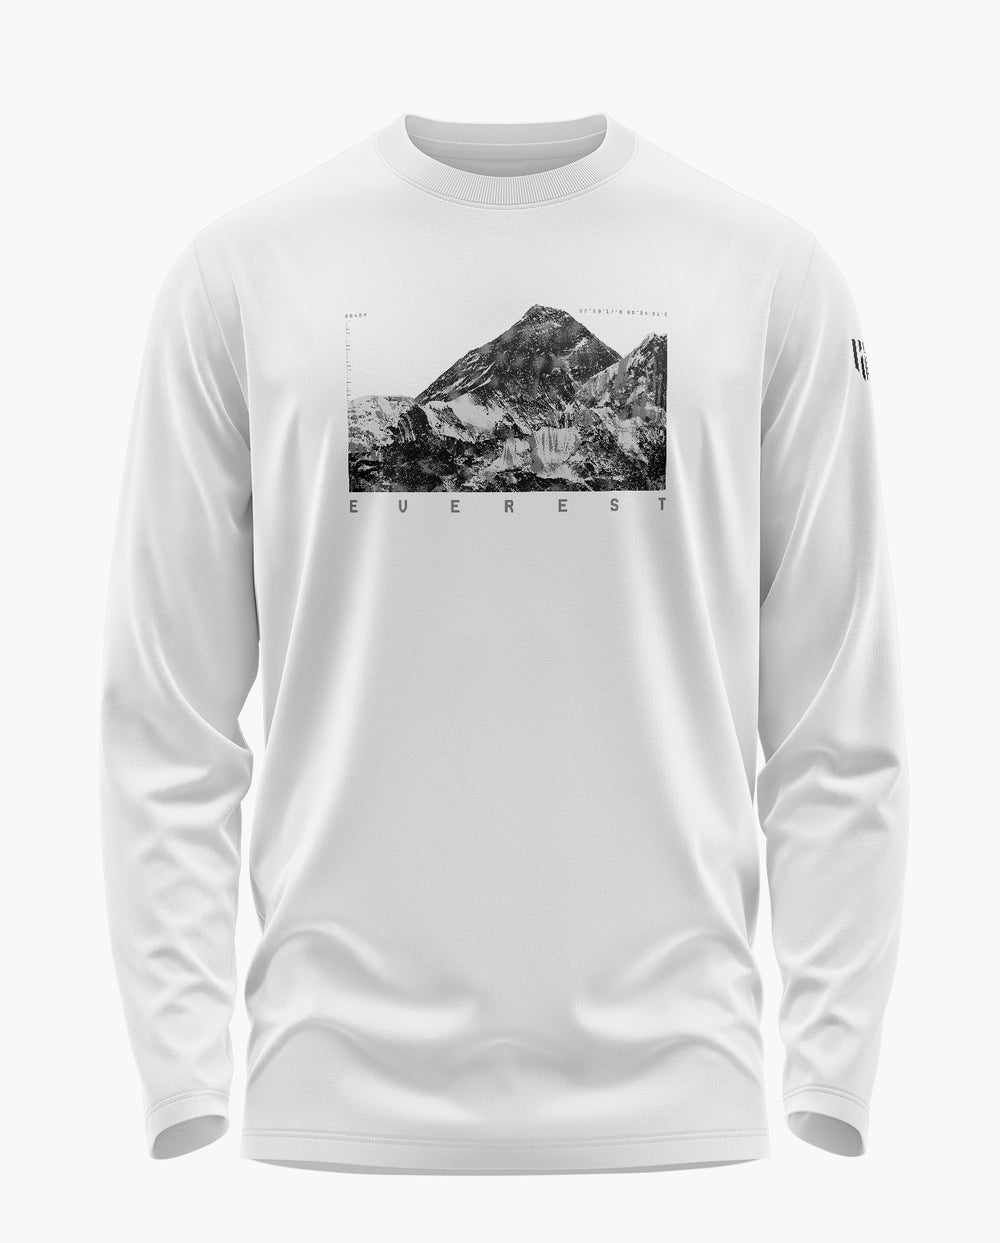 Everest Peak Full Sleeve T-Shirt - Aero Armour